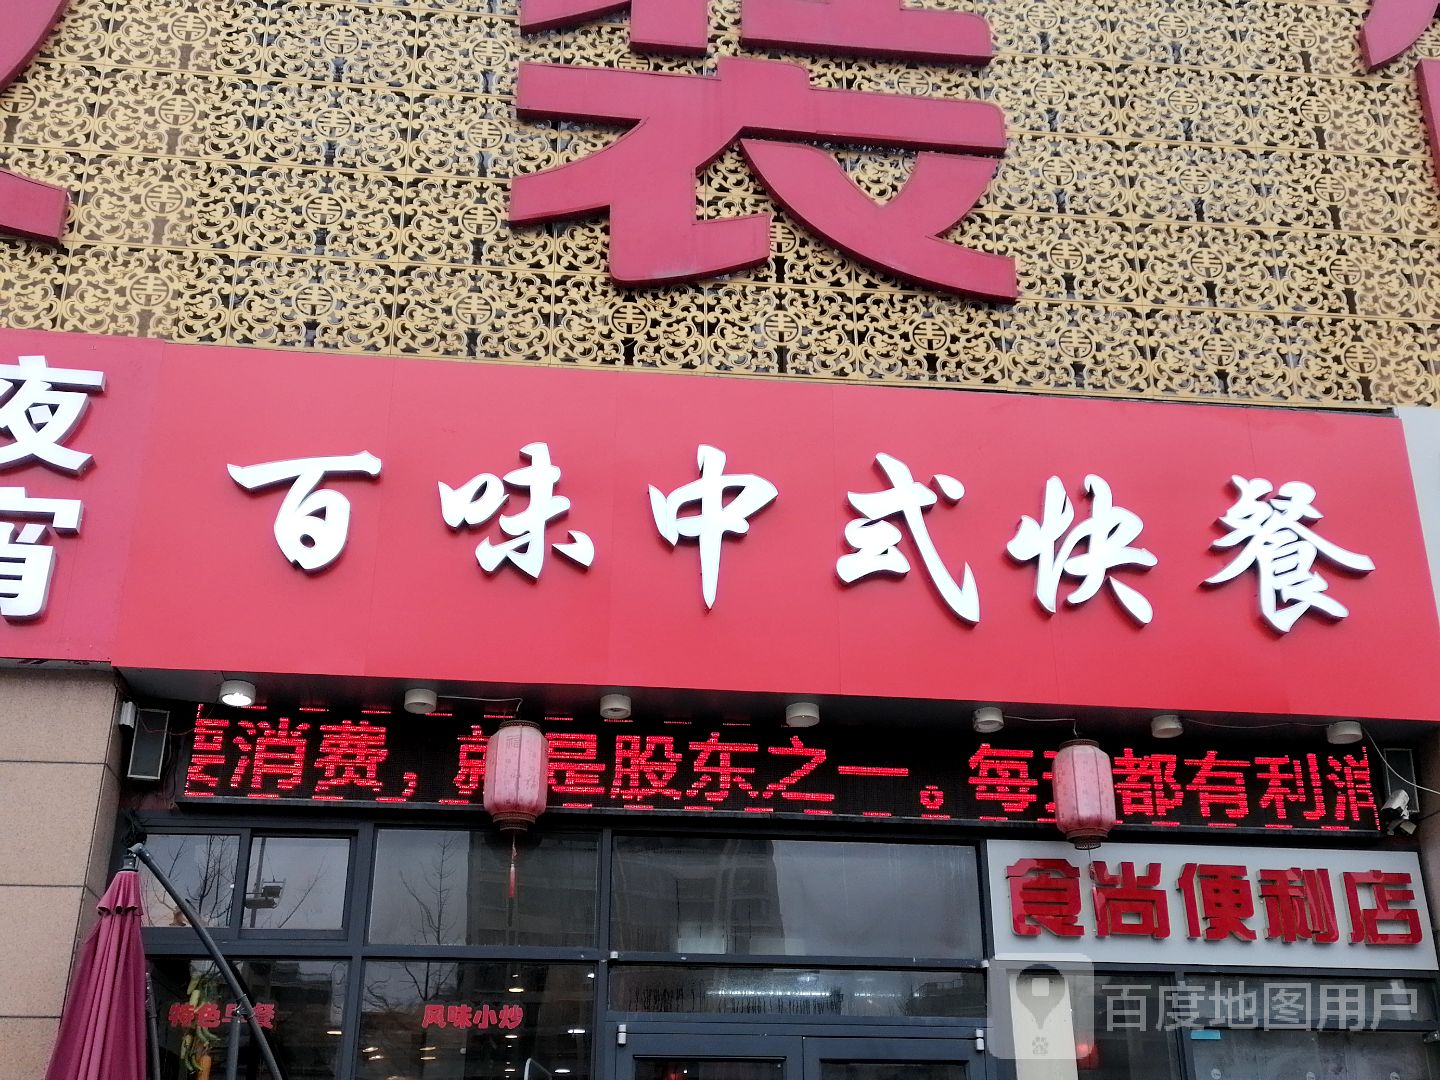 中式快餐广告牌图片